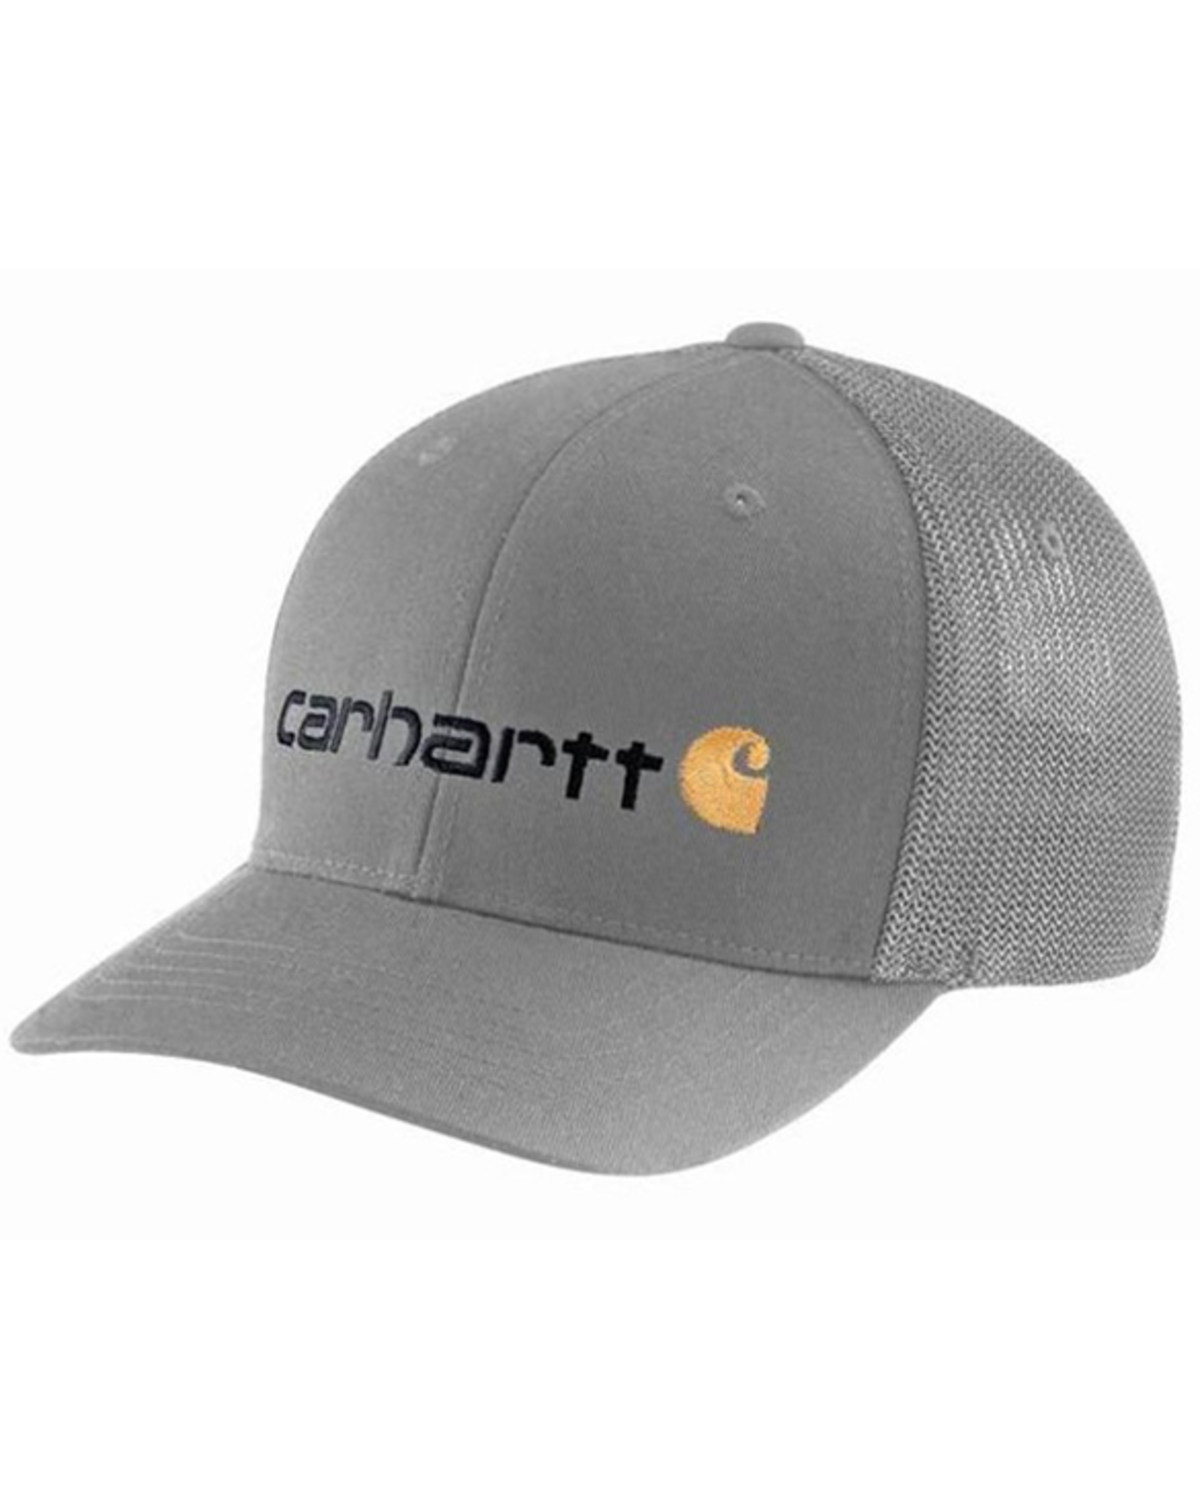 Carhartt Men's Embroidered Logo Ball Cap